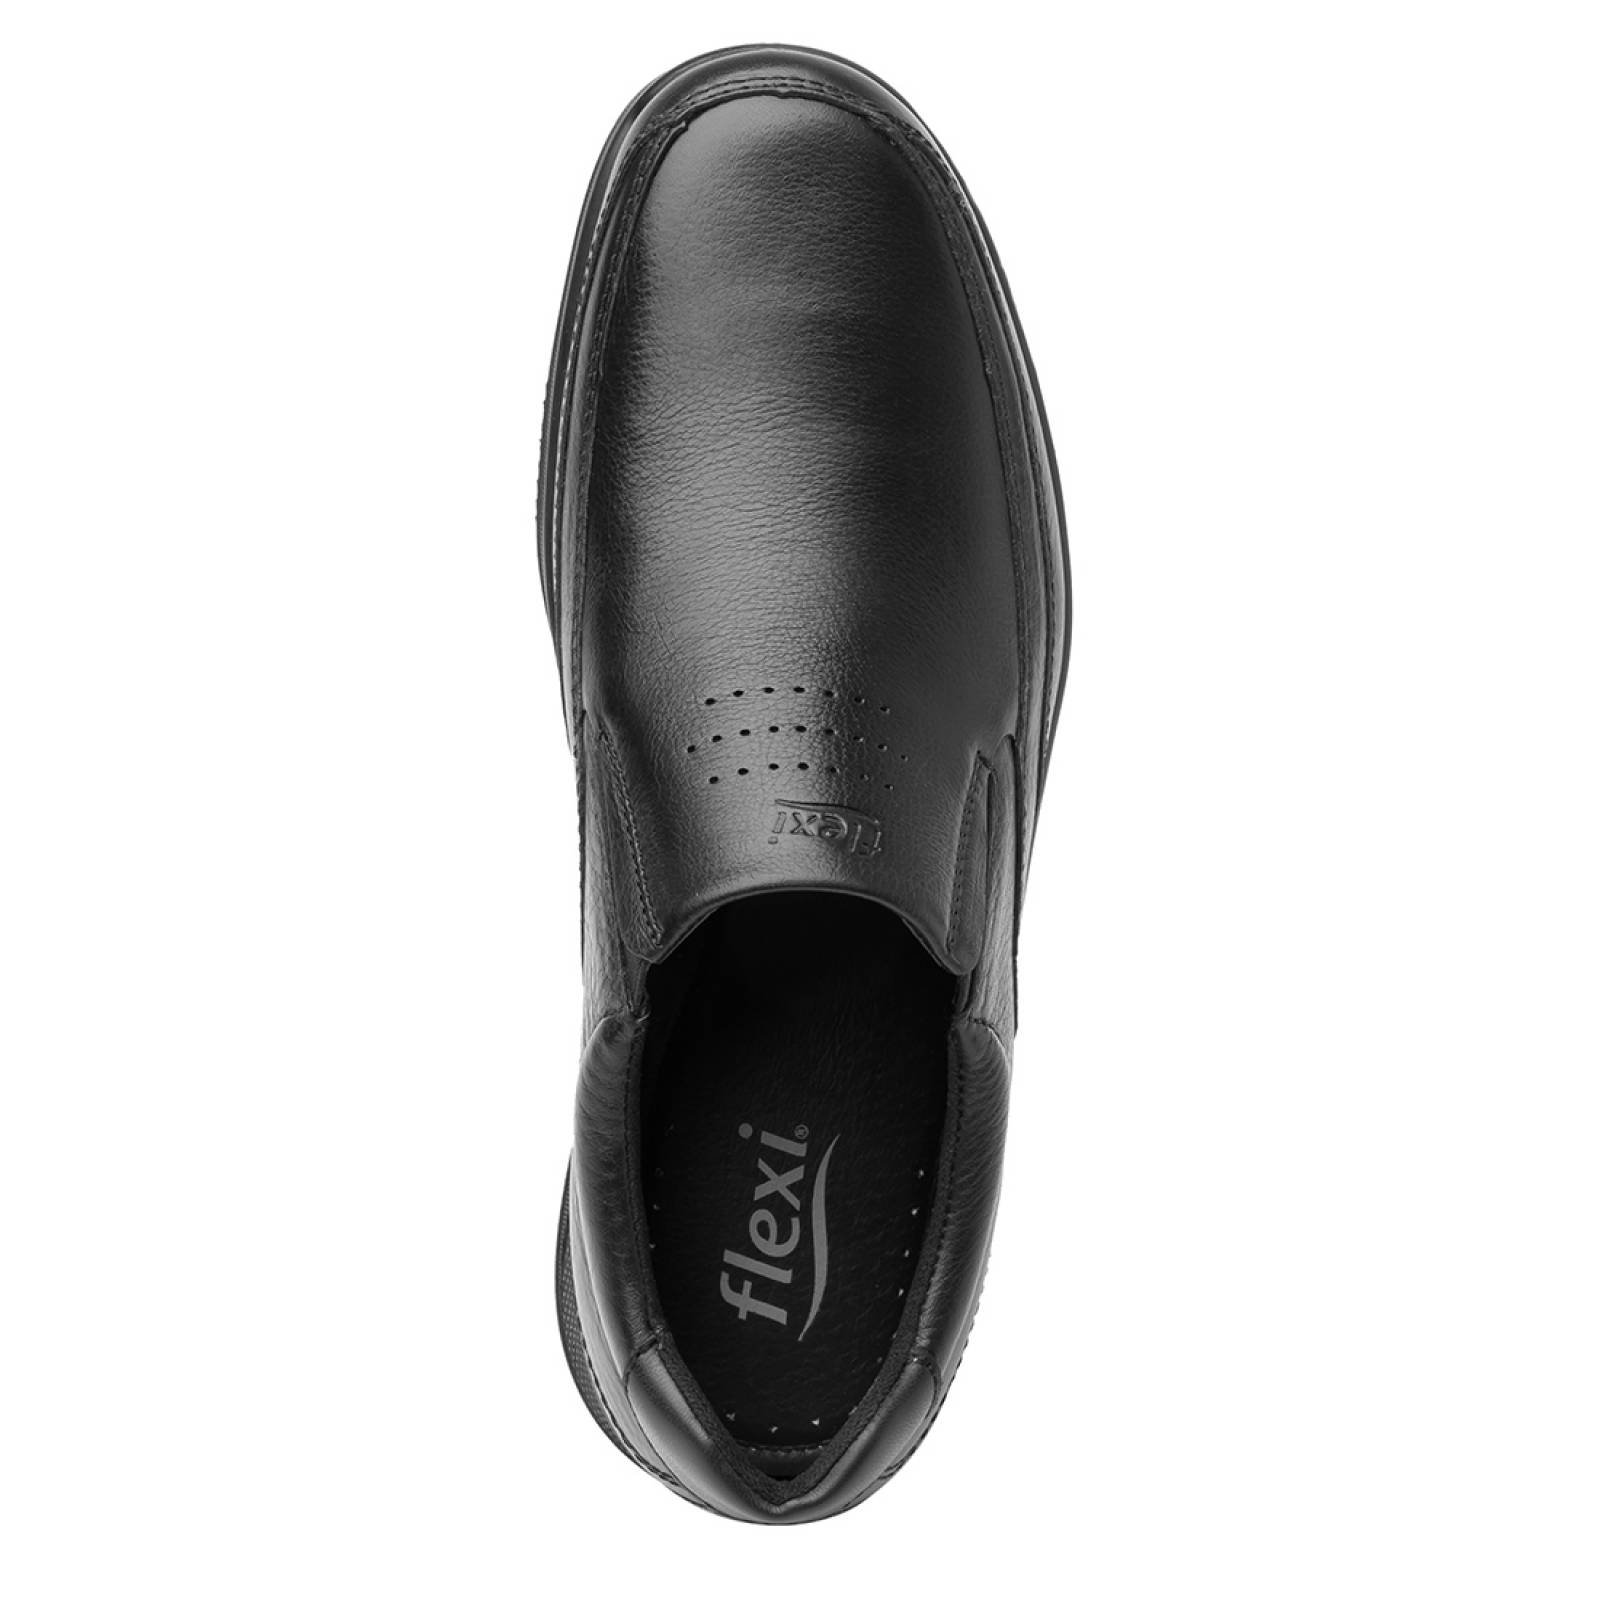 Zapatos Flexi para hombre - 50808  negro